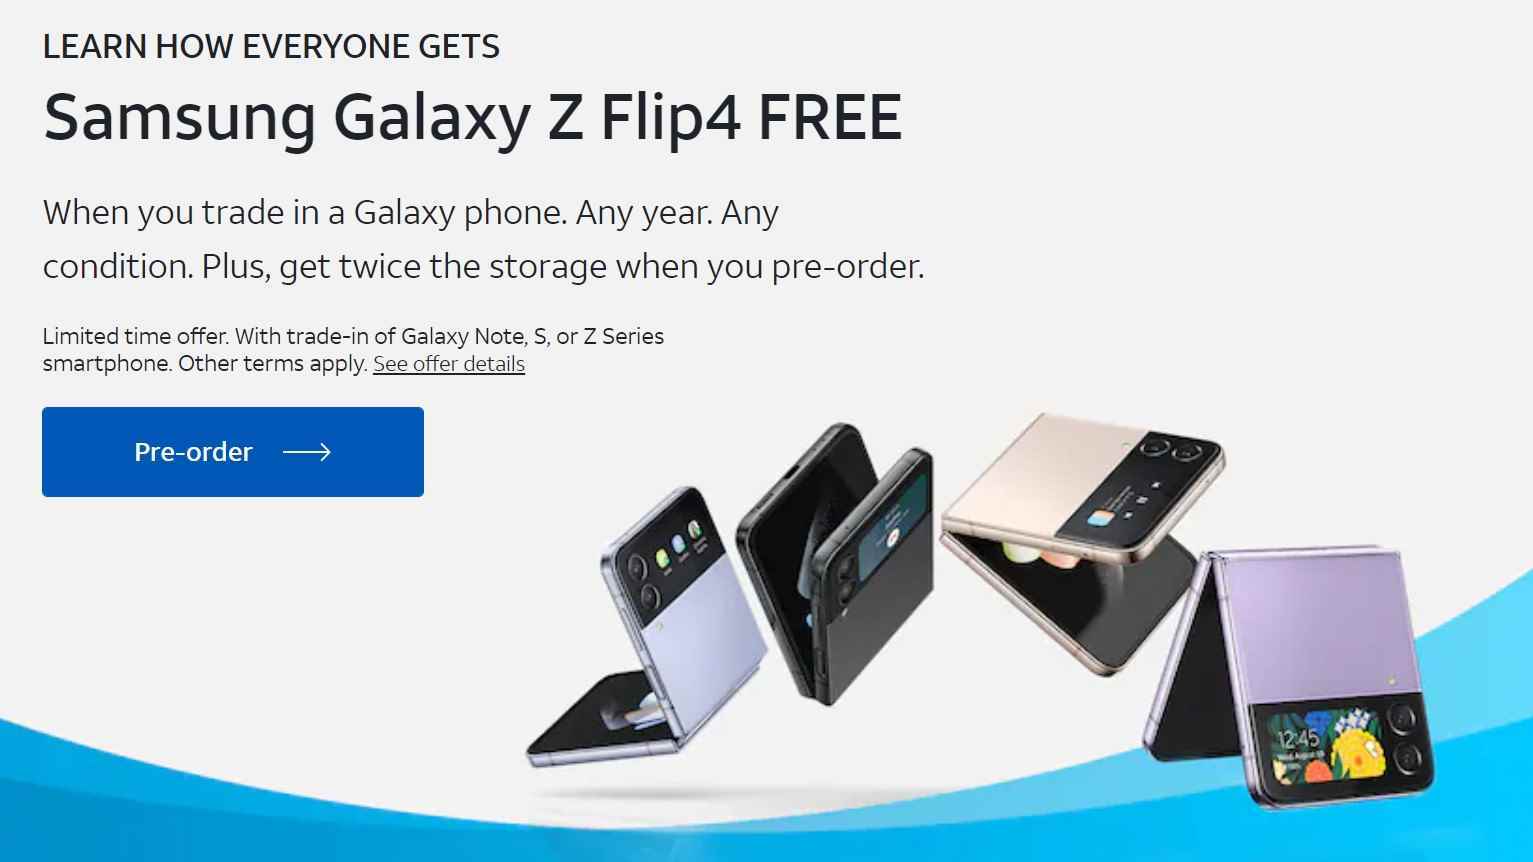 AT&T reklamı, birden fazla Galaxy Z Flip telefonu açık ve kapalı olarak gösteren ticaretle birlikte ücretsiz Galaxy Z Flip sunuyor